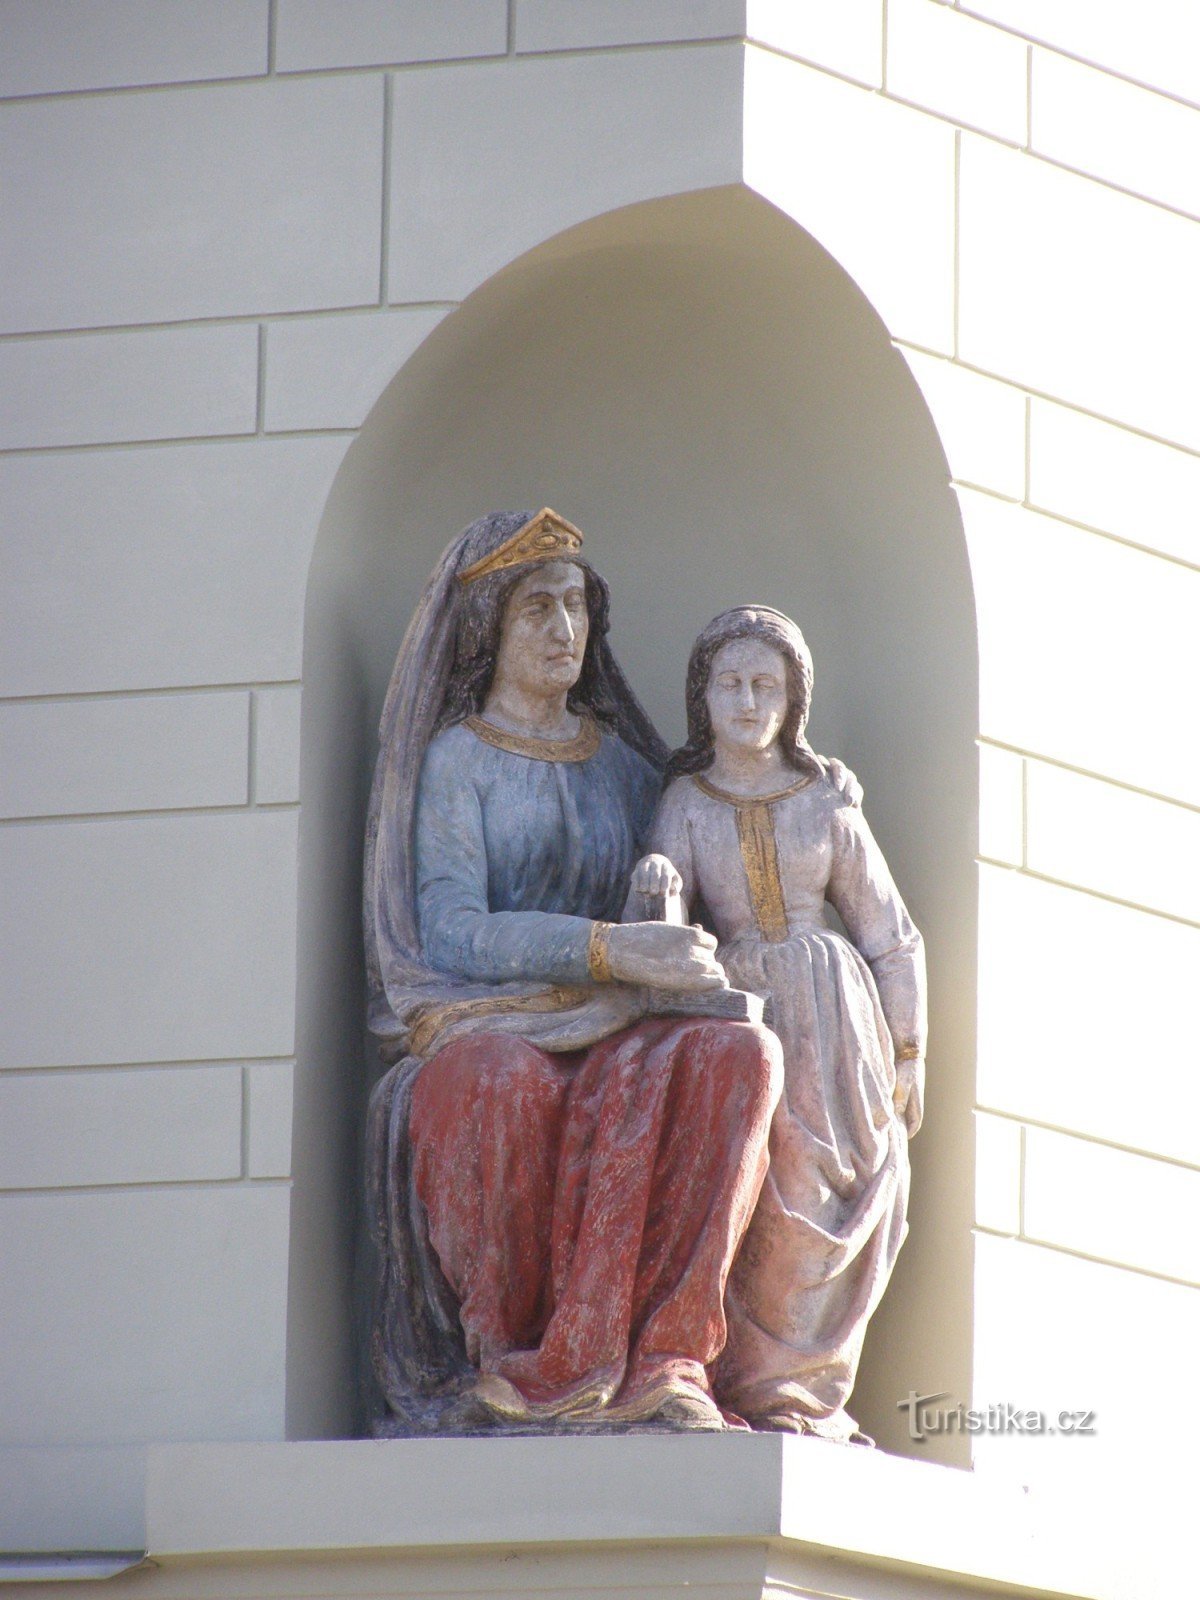 Týnec nad Labem - casa borghese n. 158 con la statua di S. Anna insegna alla Vergine Maria